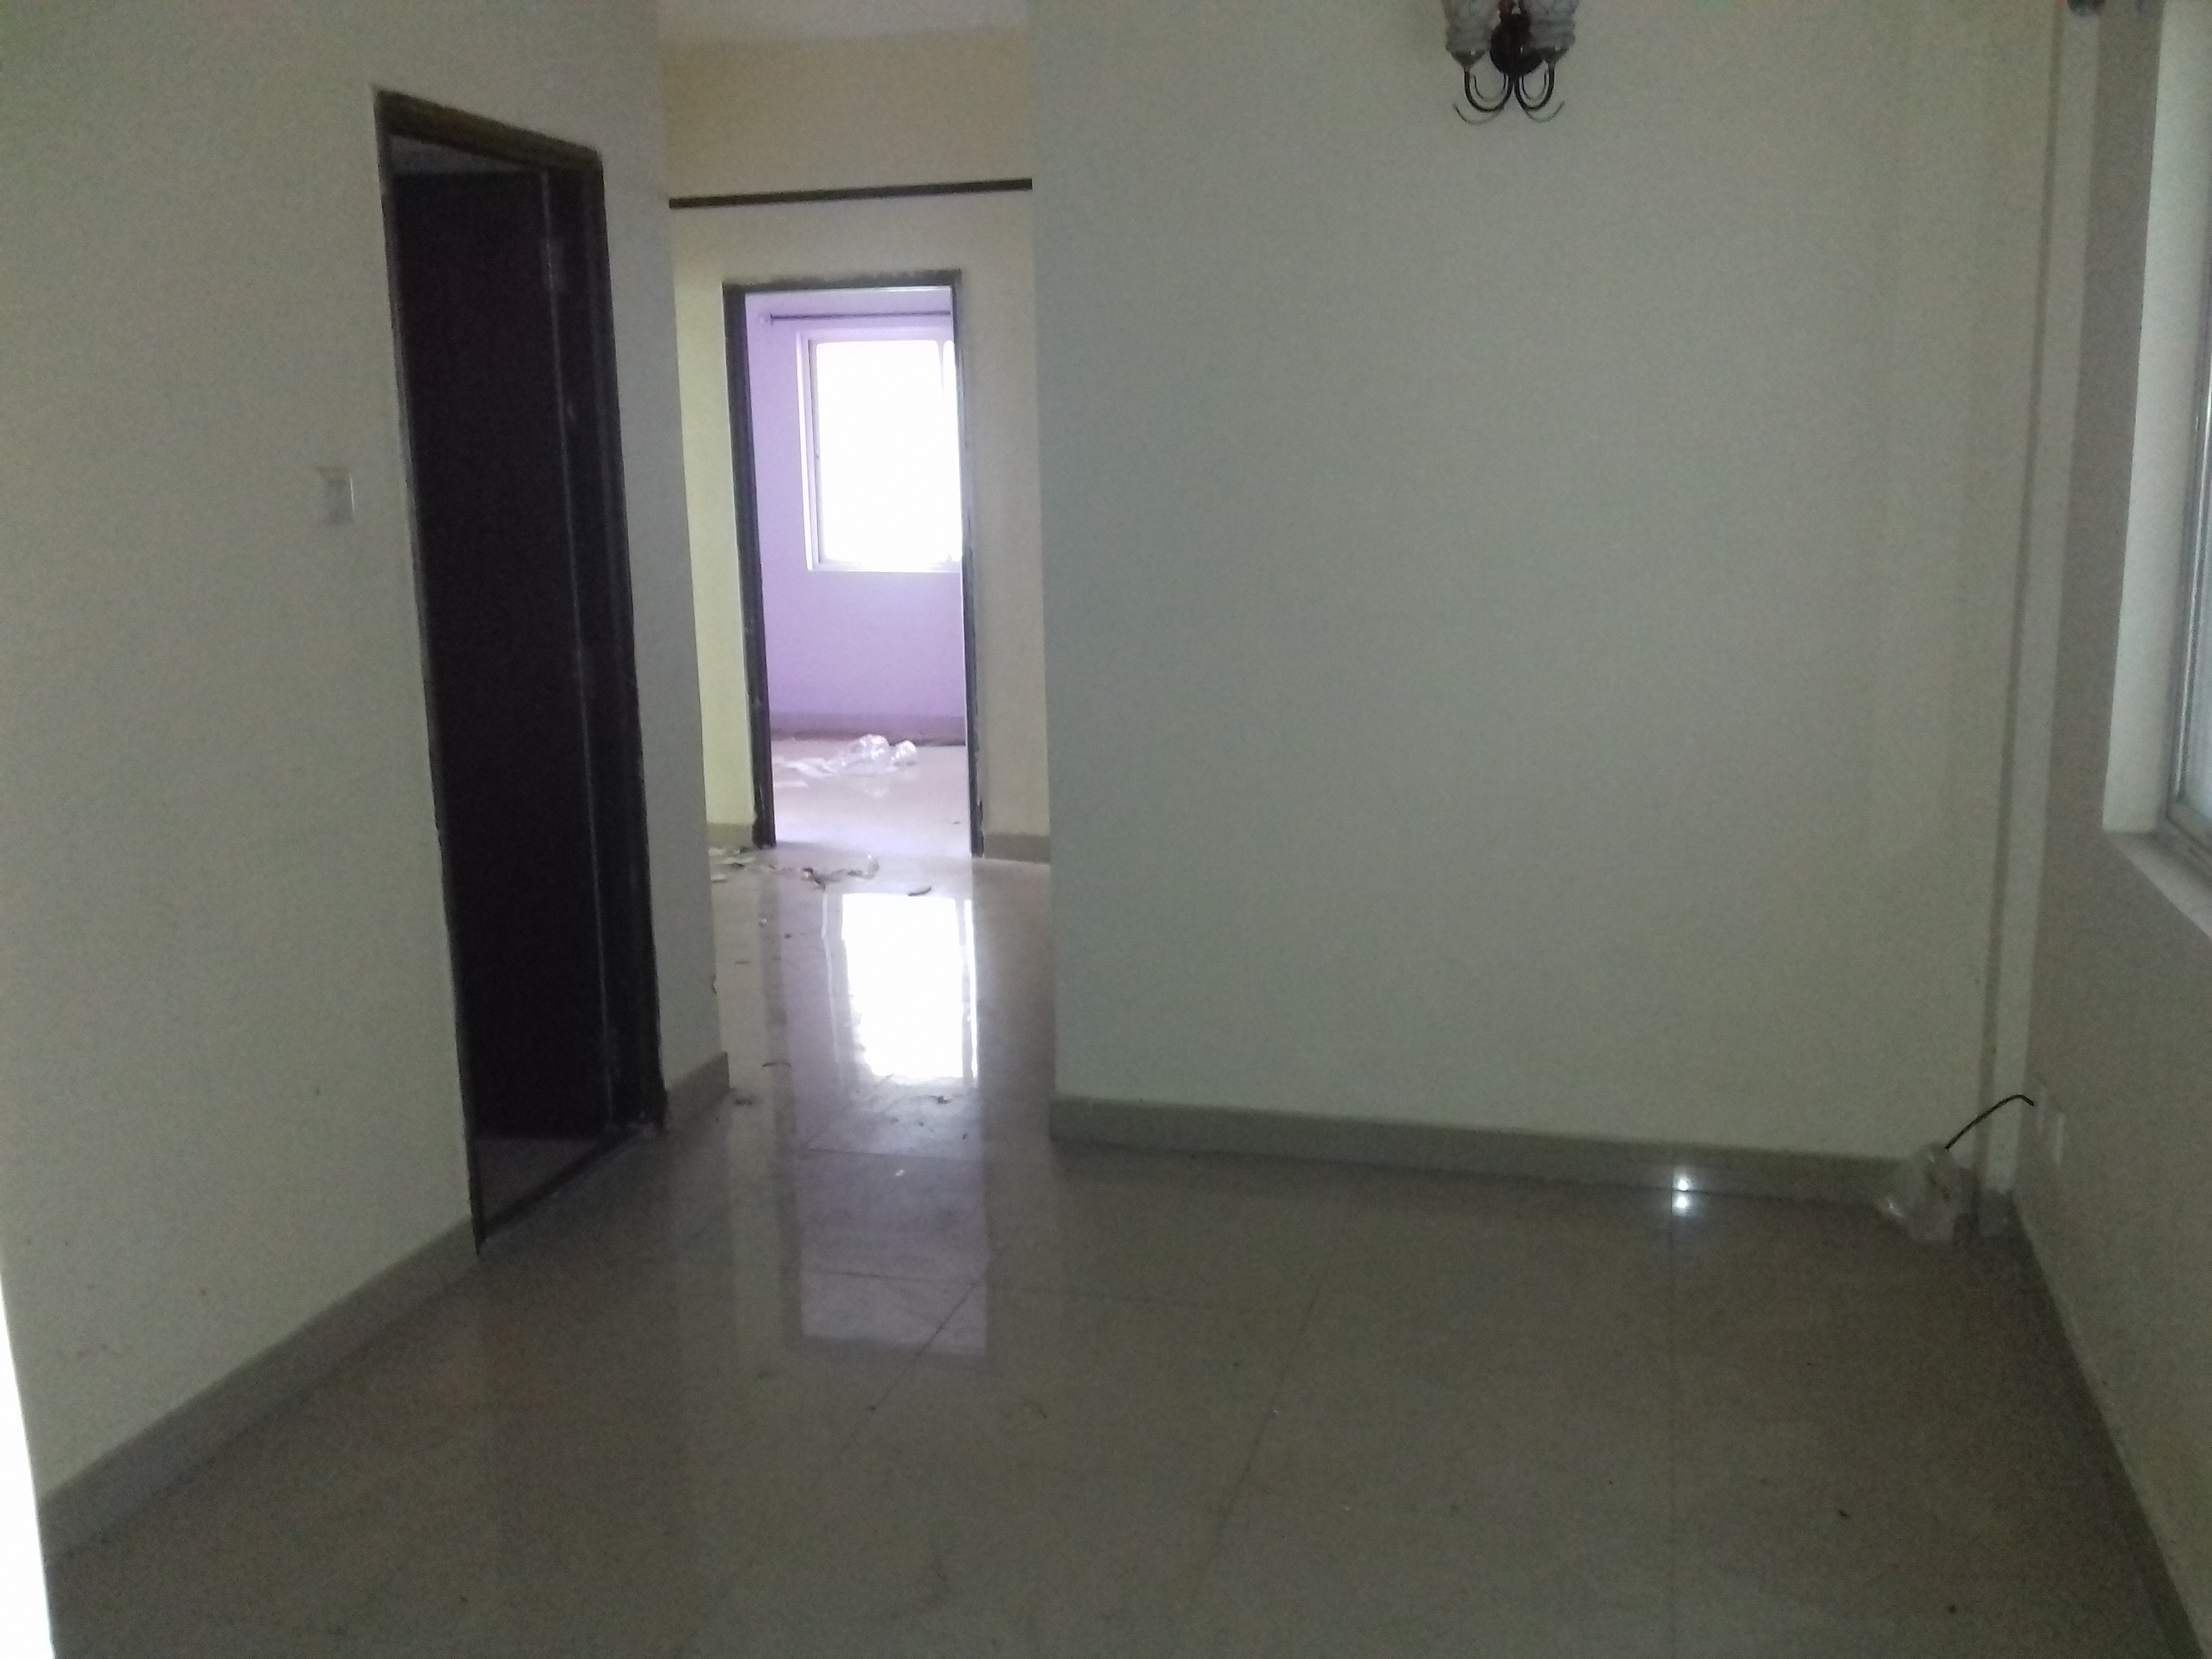 Flat For Rent in Behala Chowrasta Kolkata (Id: 10064)